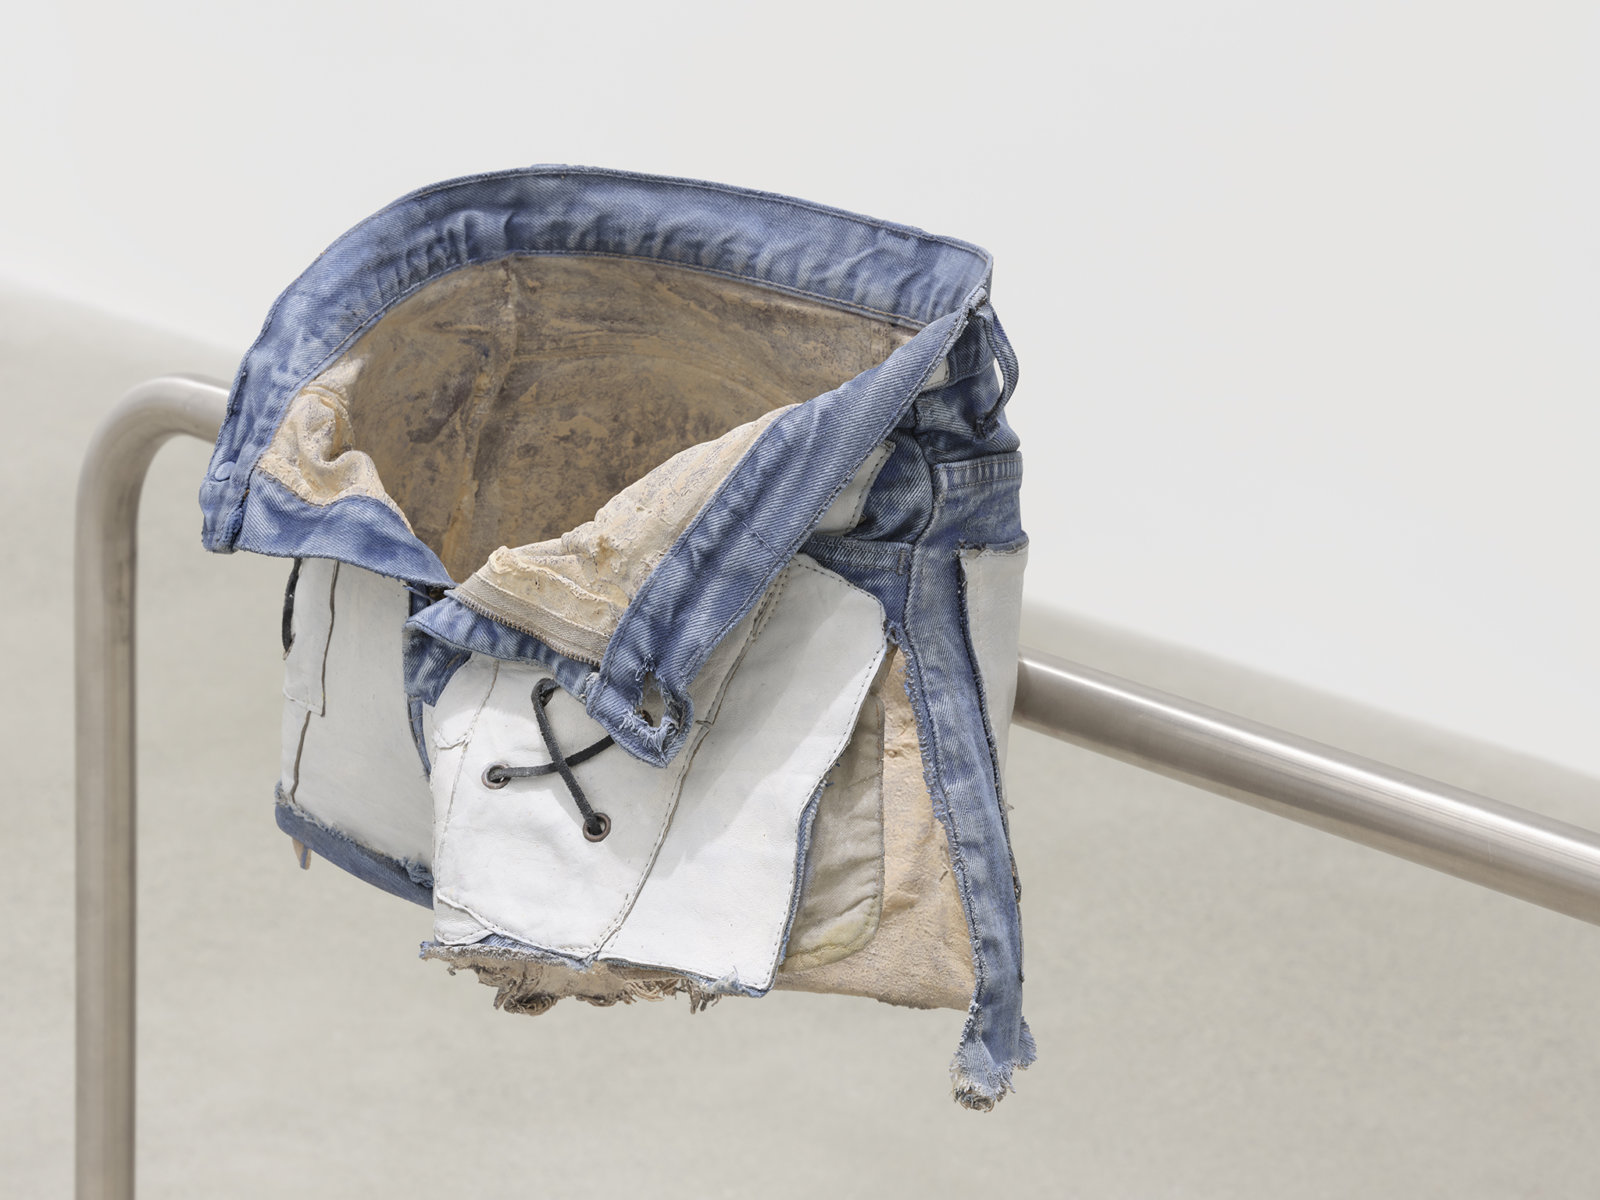 Valérie Blass, L’homme réparé (detail), 2019, stainless steel, denim shorts, epoxy resin, acrylic paint, 41 x 89 x 12 in. (104 x 226 x 31 cm)